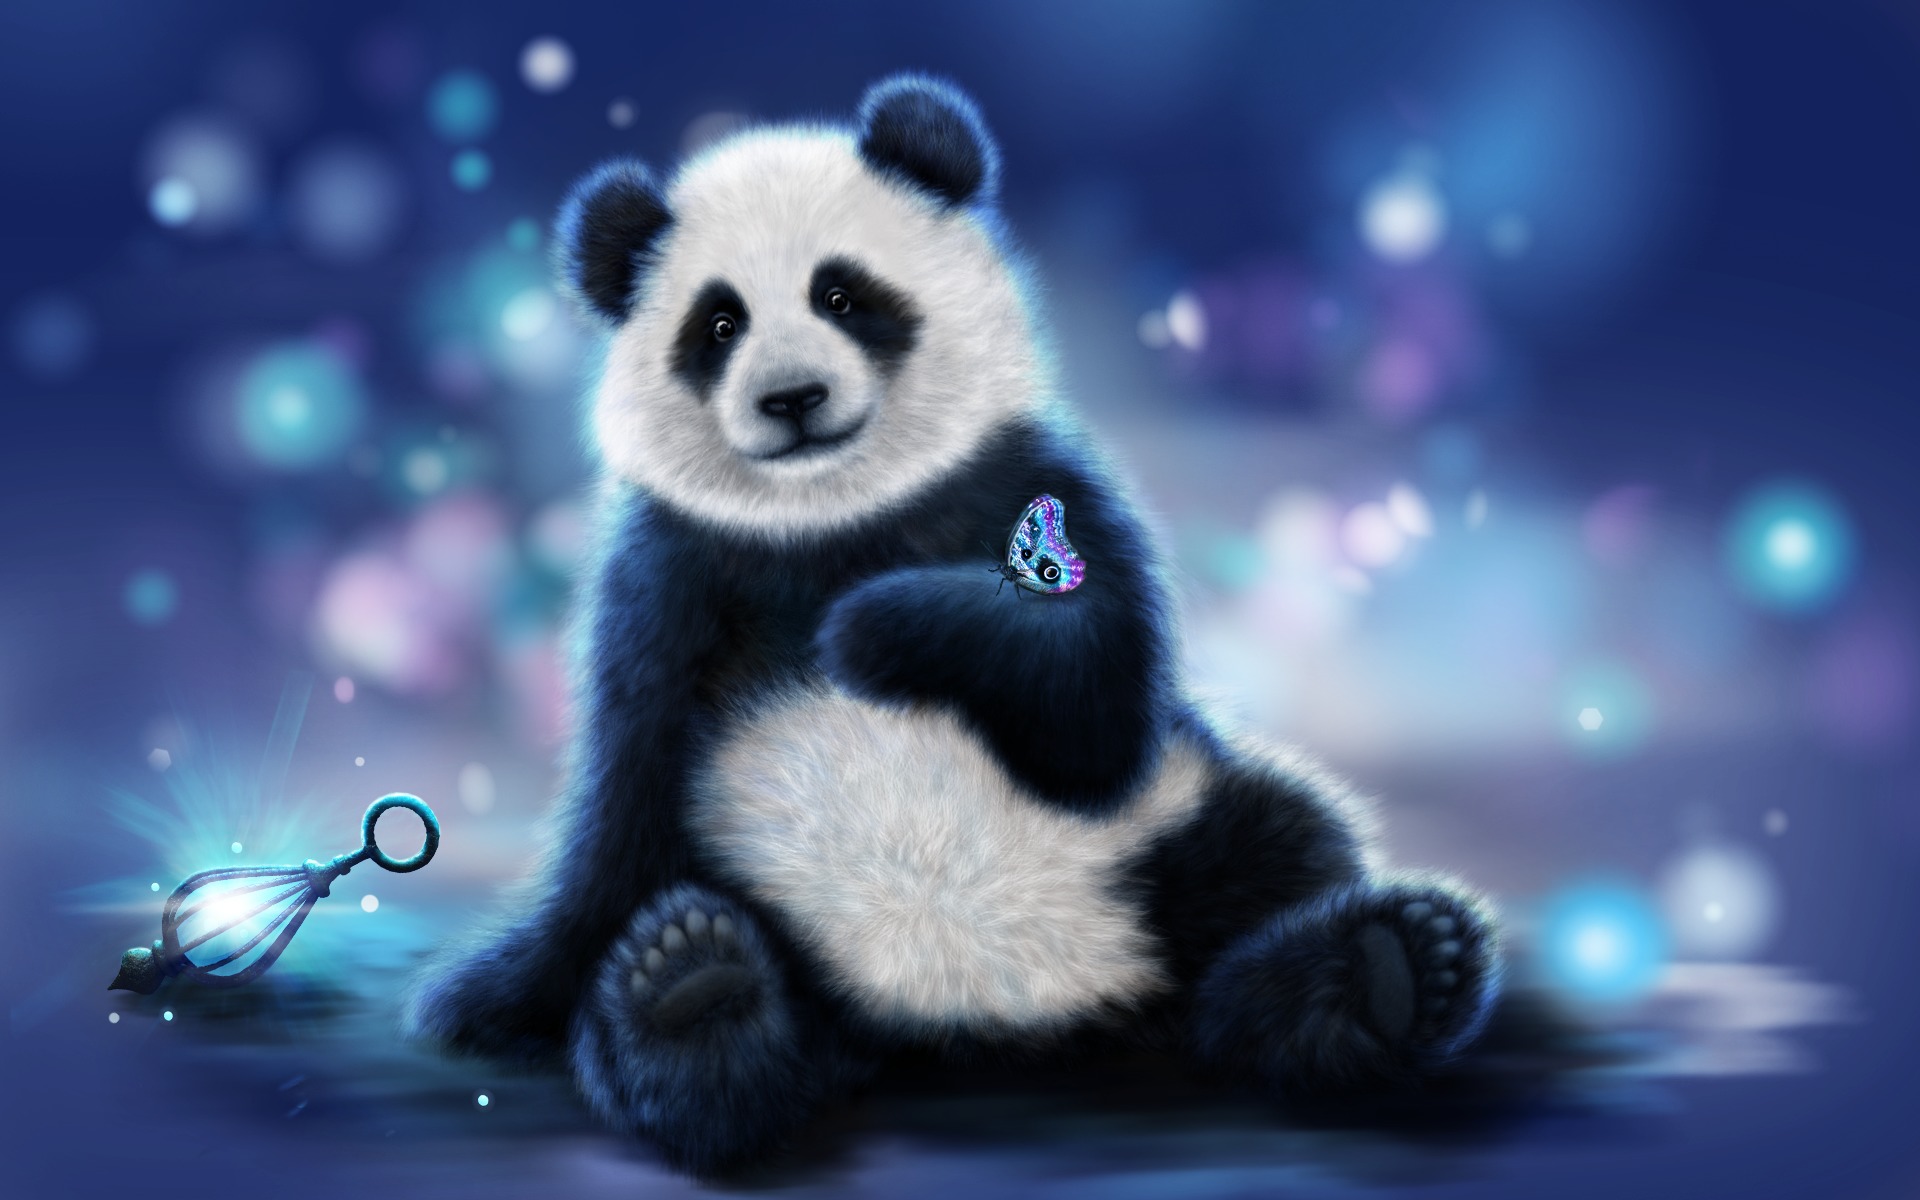 Cute panda background